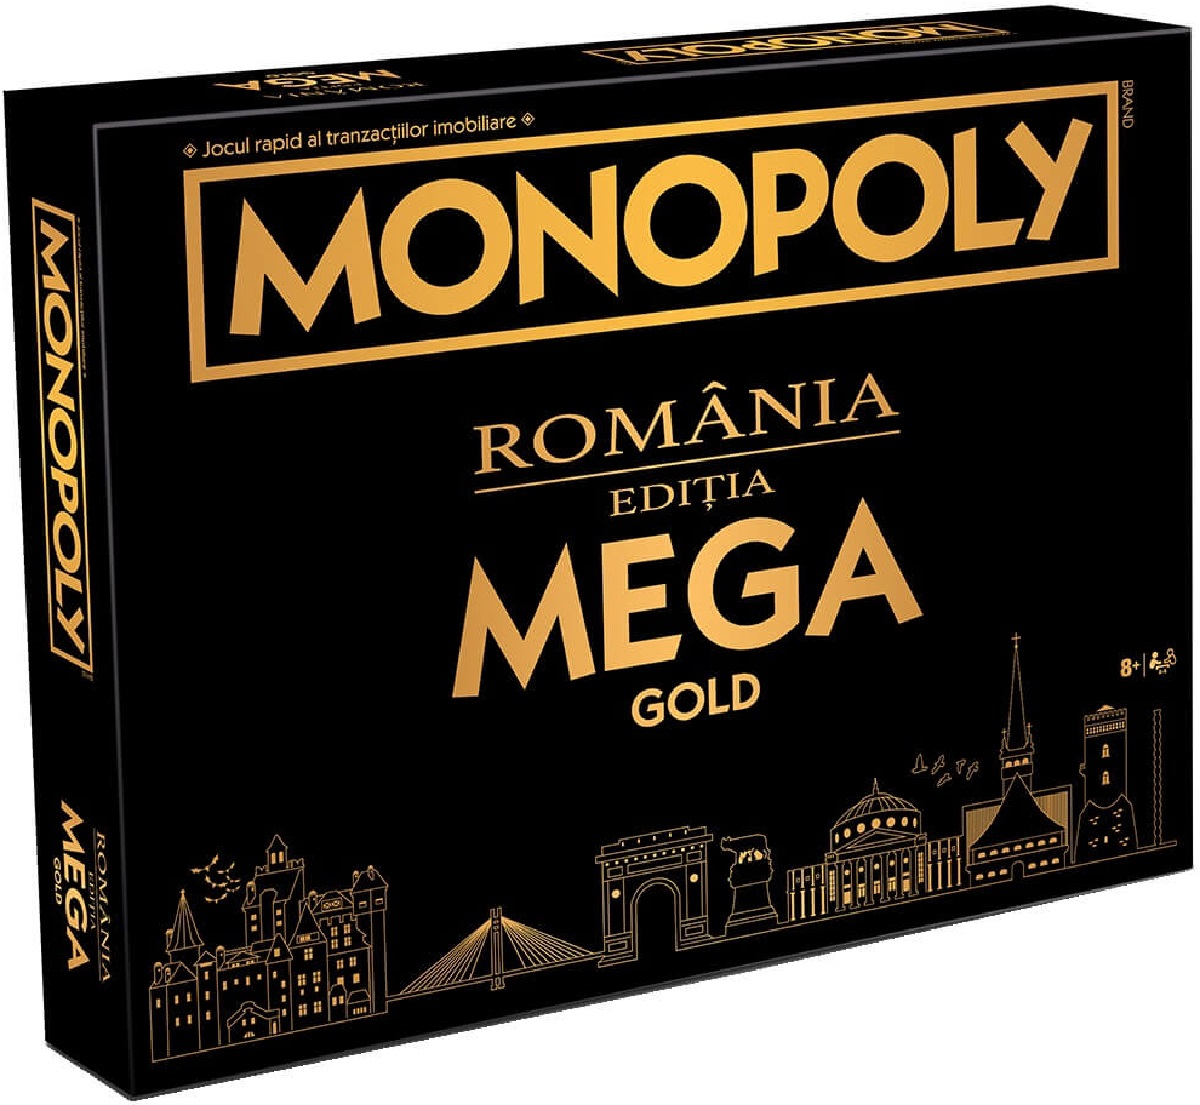 Monopoly. Mega Gold Romania